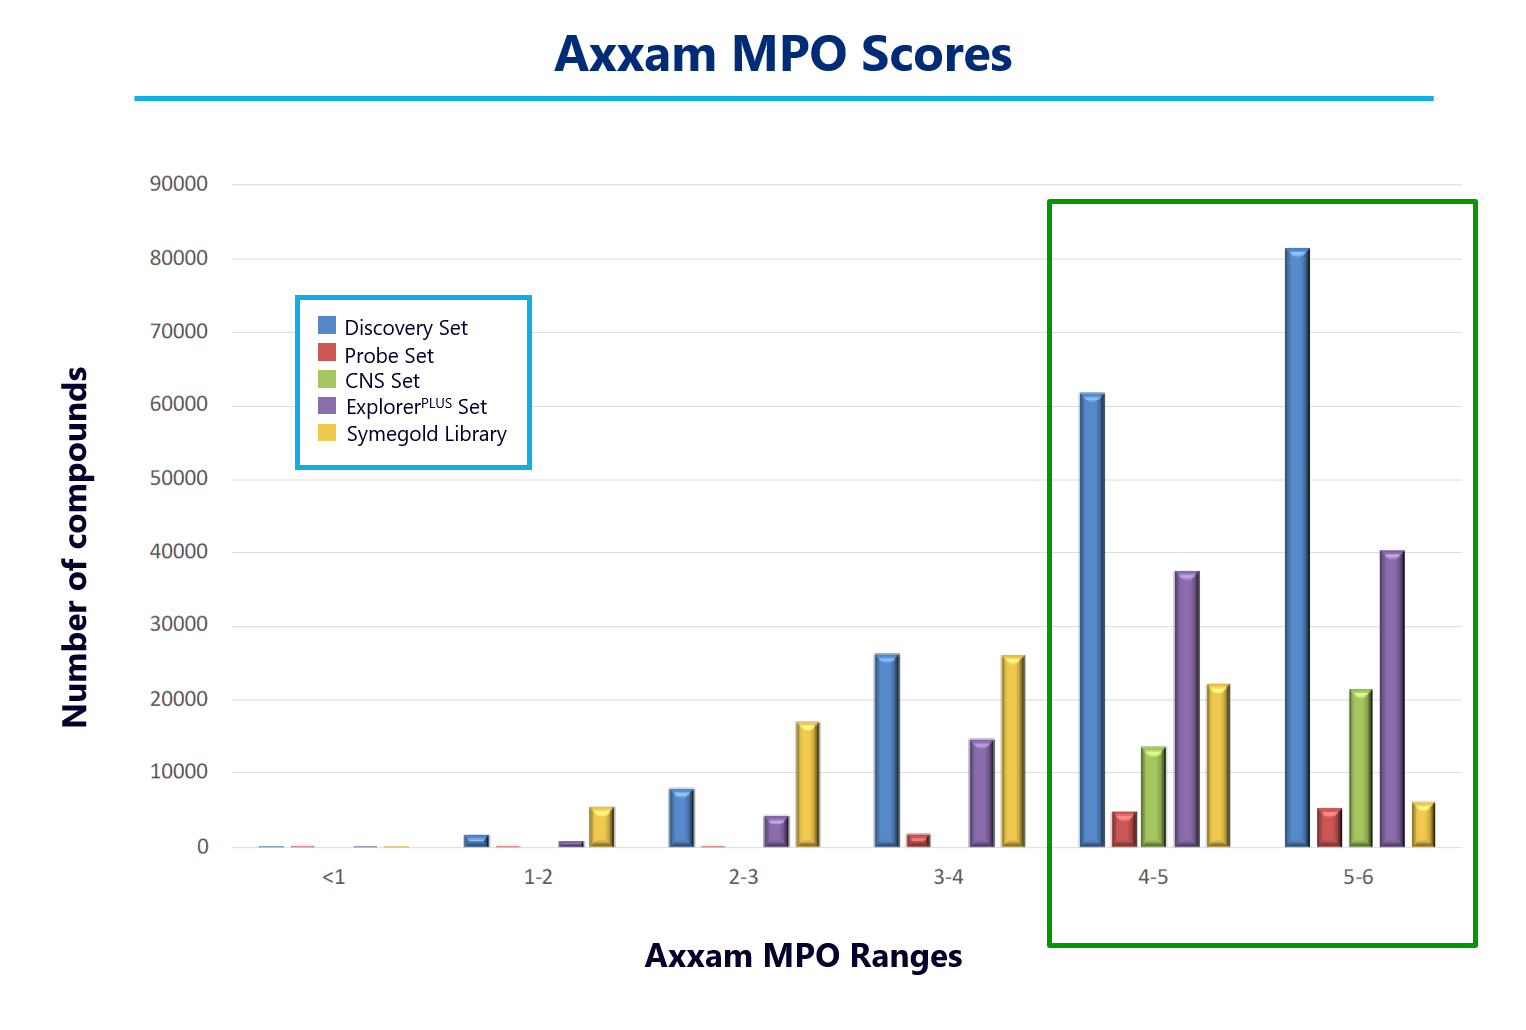 Compound-library-Axxam-MPO-scores